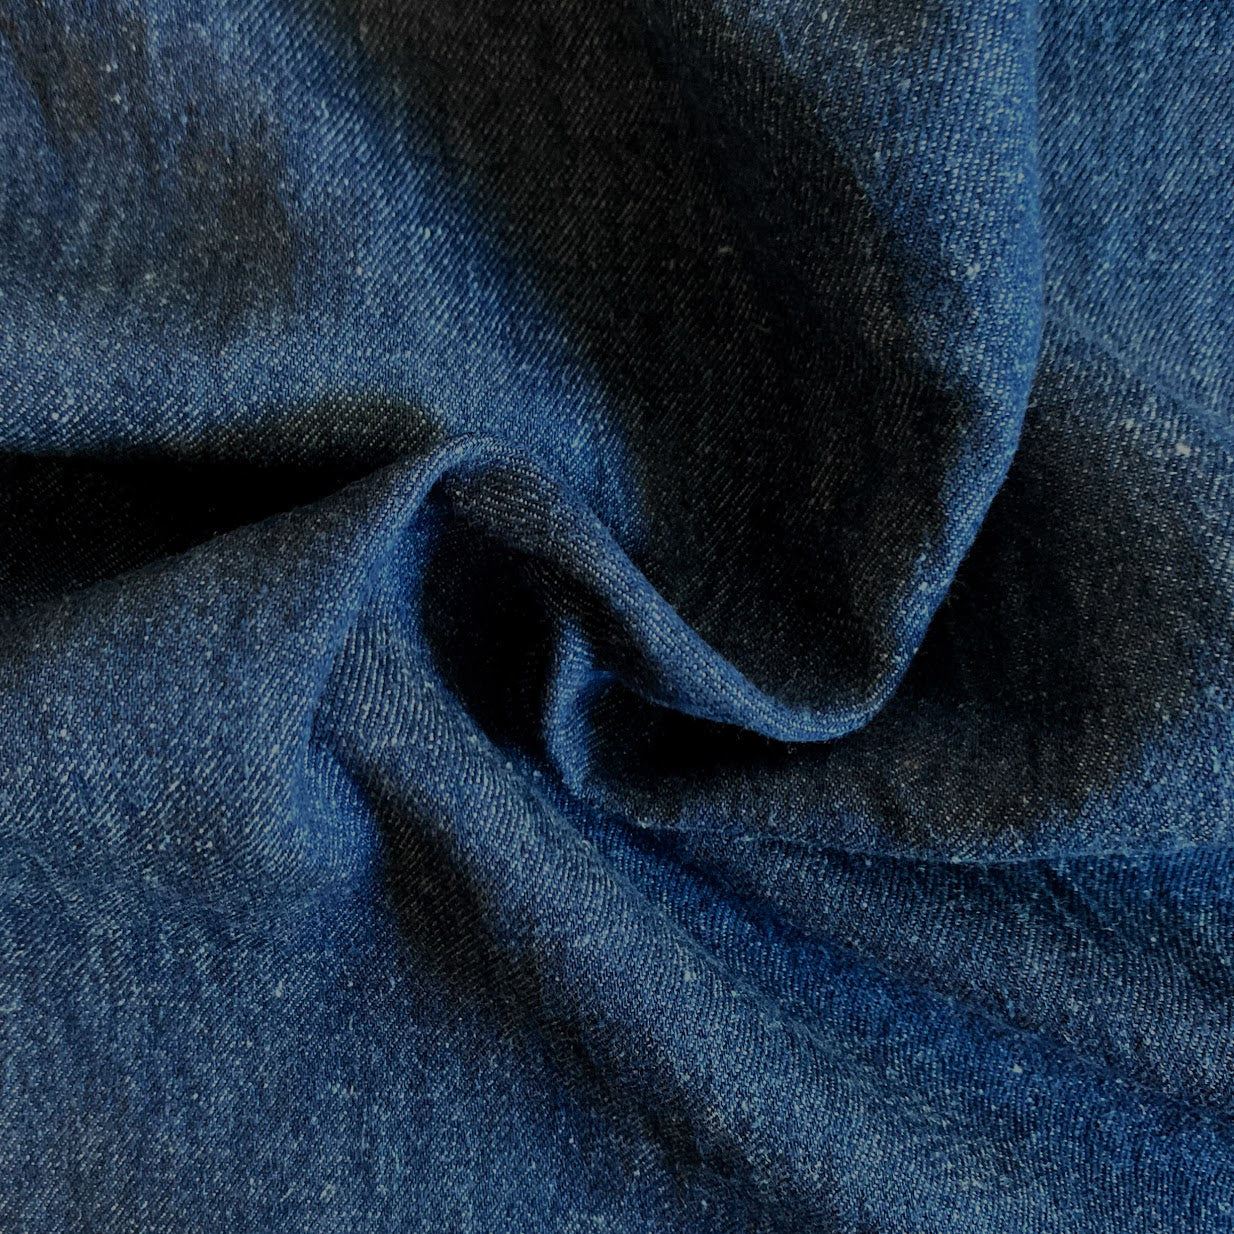 Washed Heavy Weight Dark Blue Denim Fabric